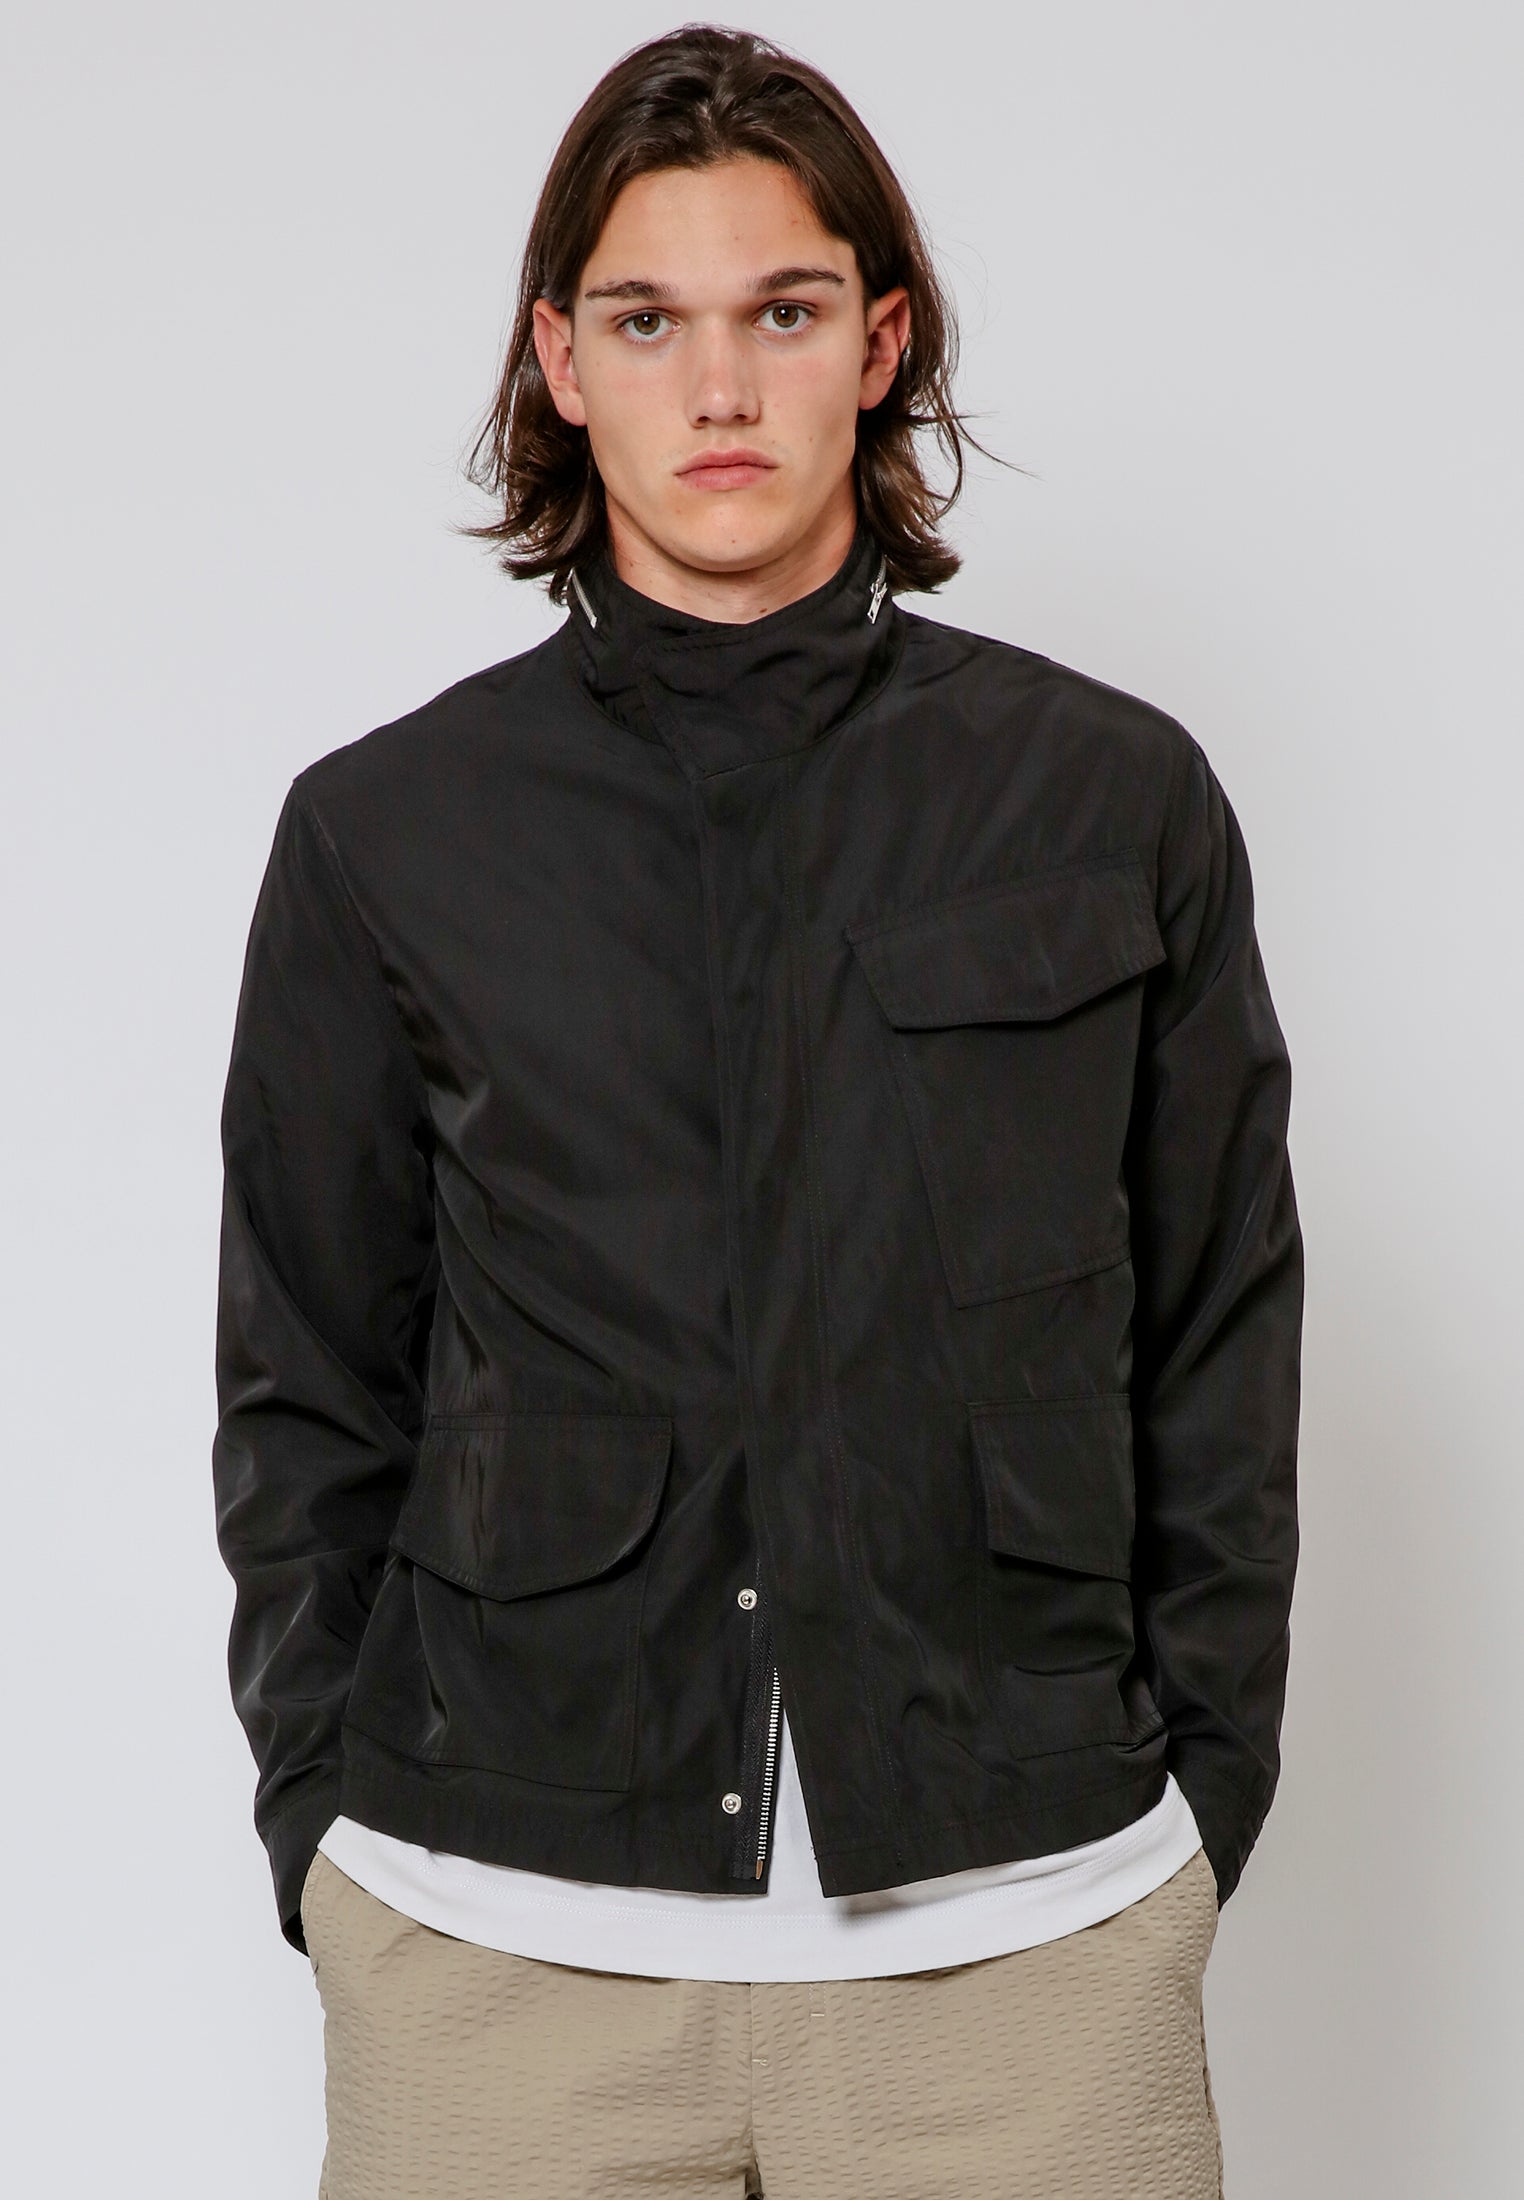 Men's Coats & Jackets - Parkas & Puffer Jackets